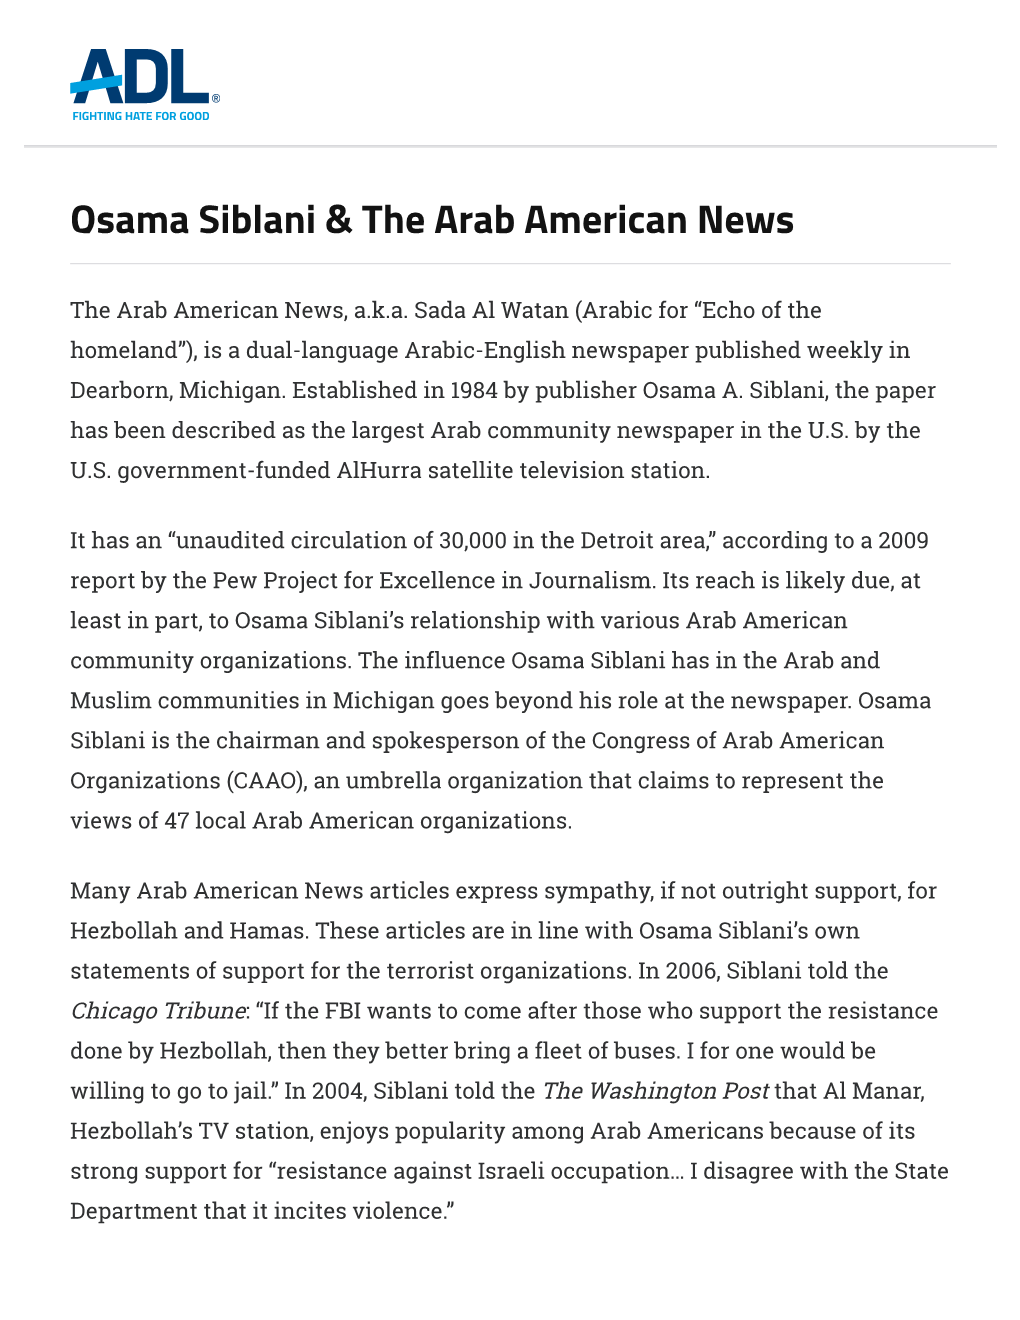 Osama Siblani & the Arab American News